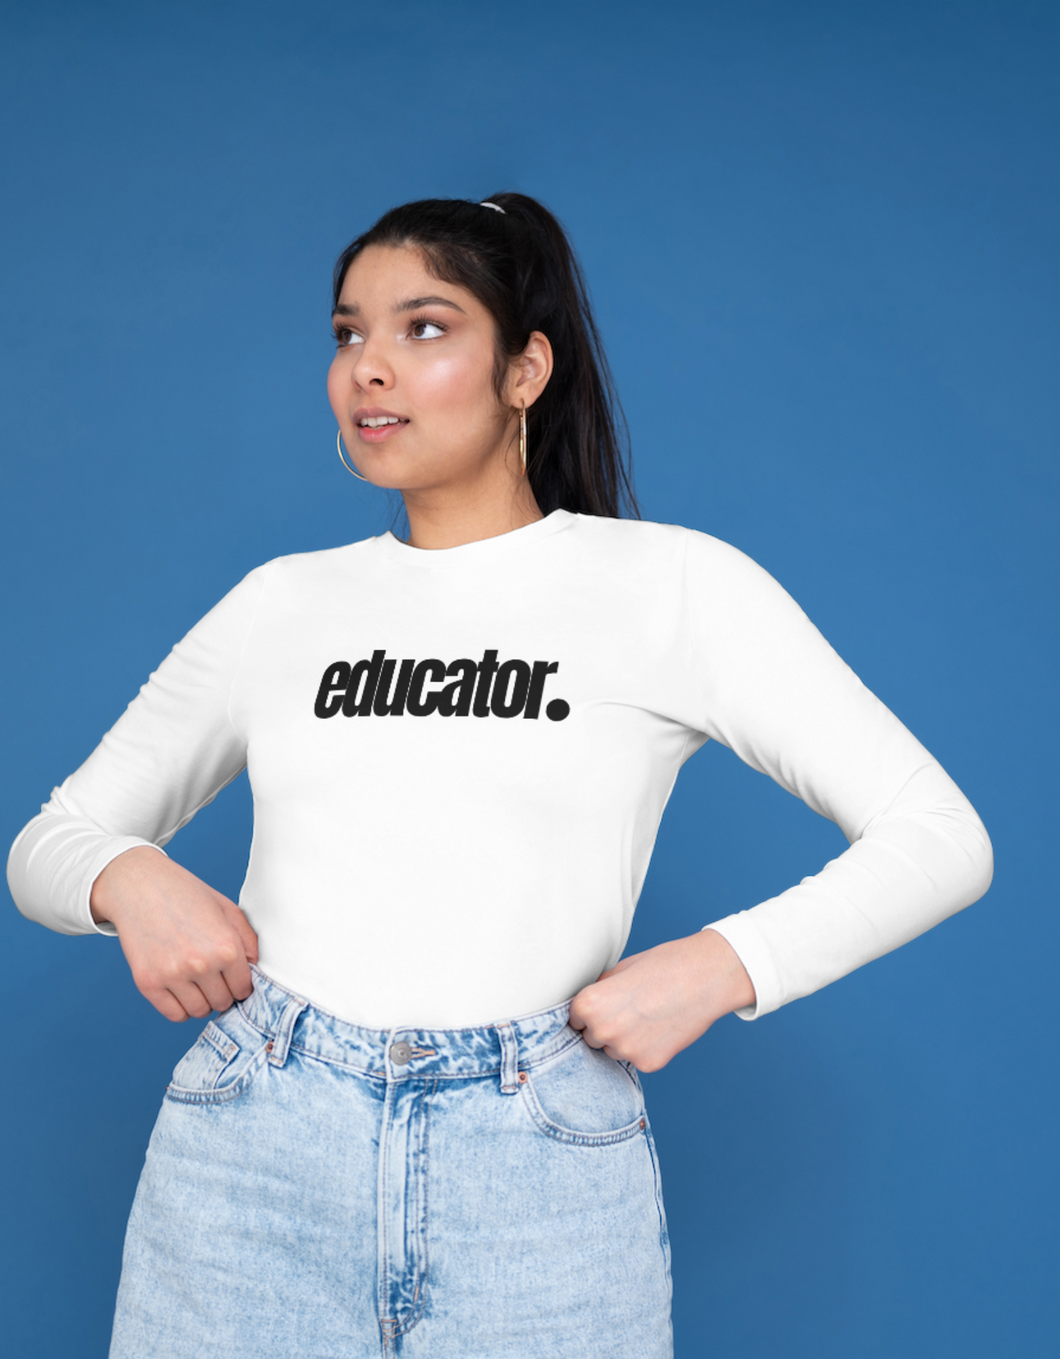 Educator. Women’s Long Sleeved Shirt